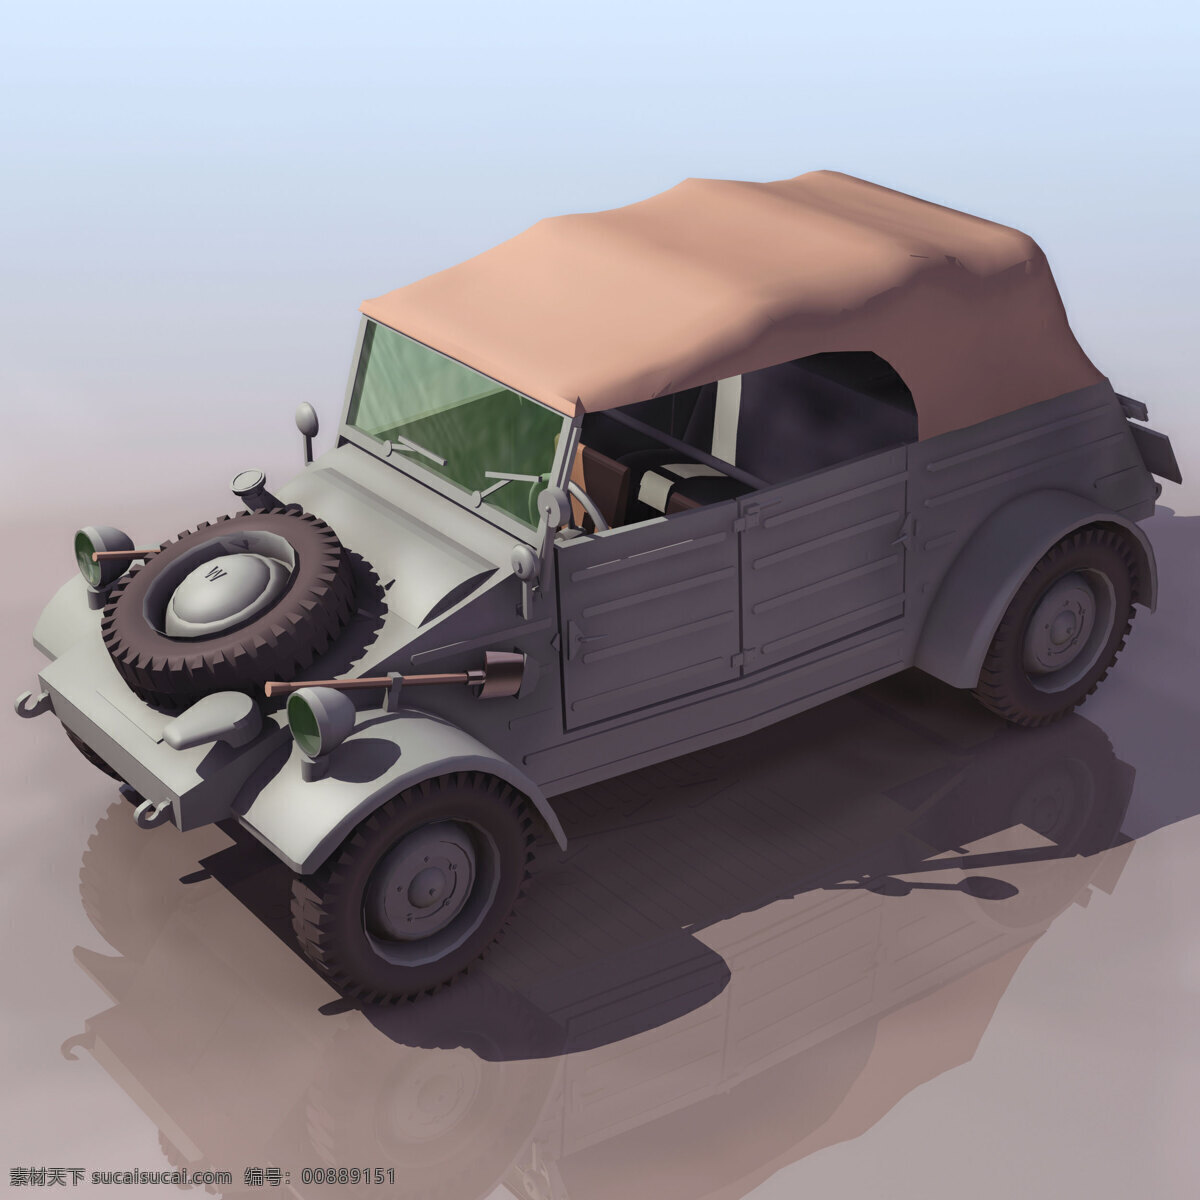 军用 汽车模型 kubel 军事模型 军用汽车模型 陆军武器库 3d模型素材 其他3d模型